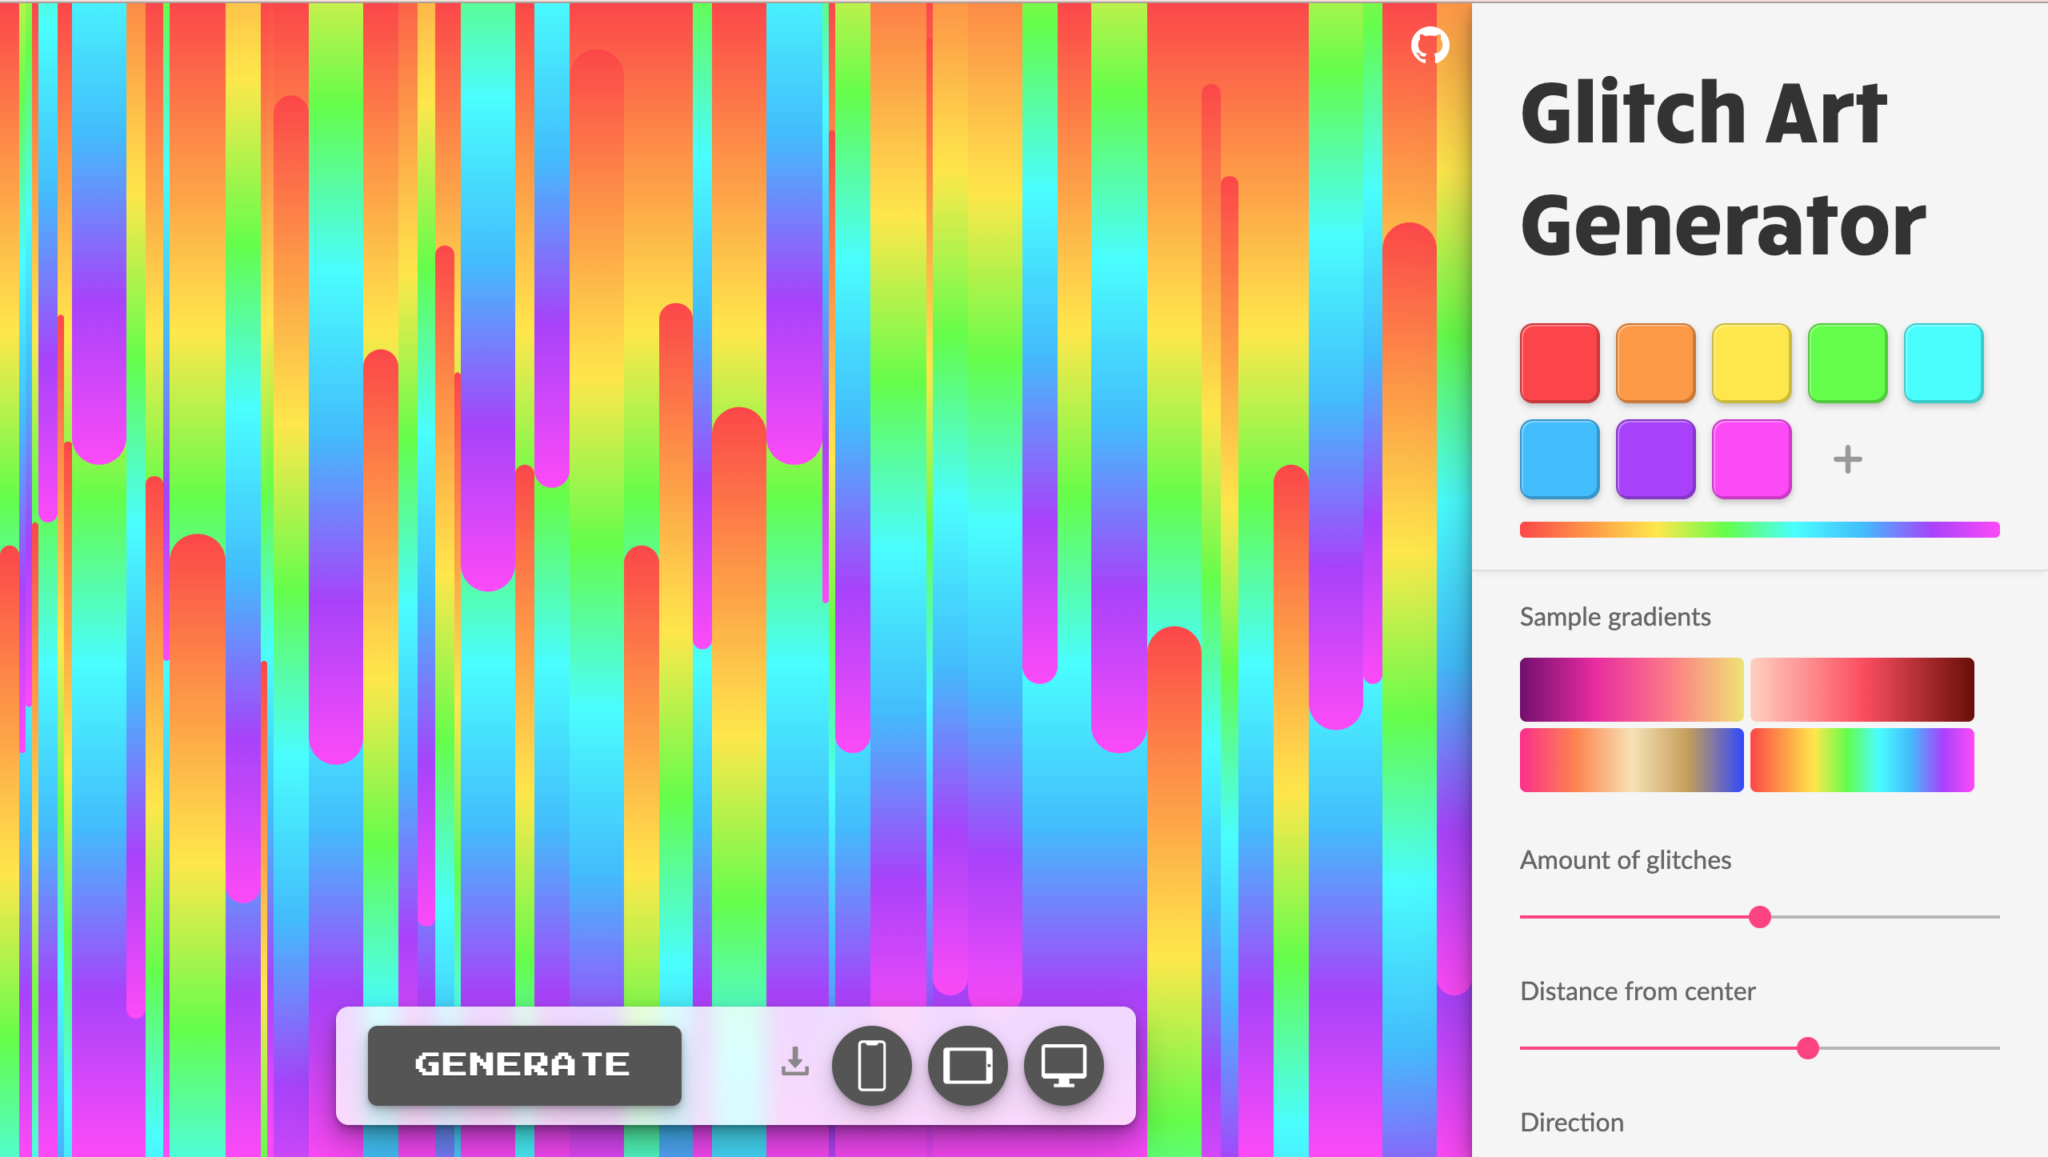 glitch art generator design apps